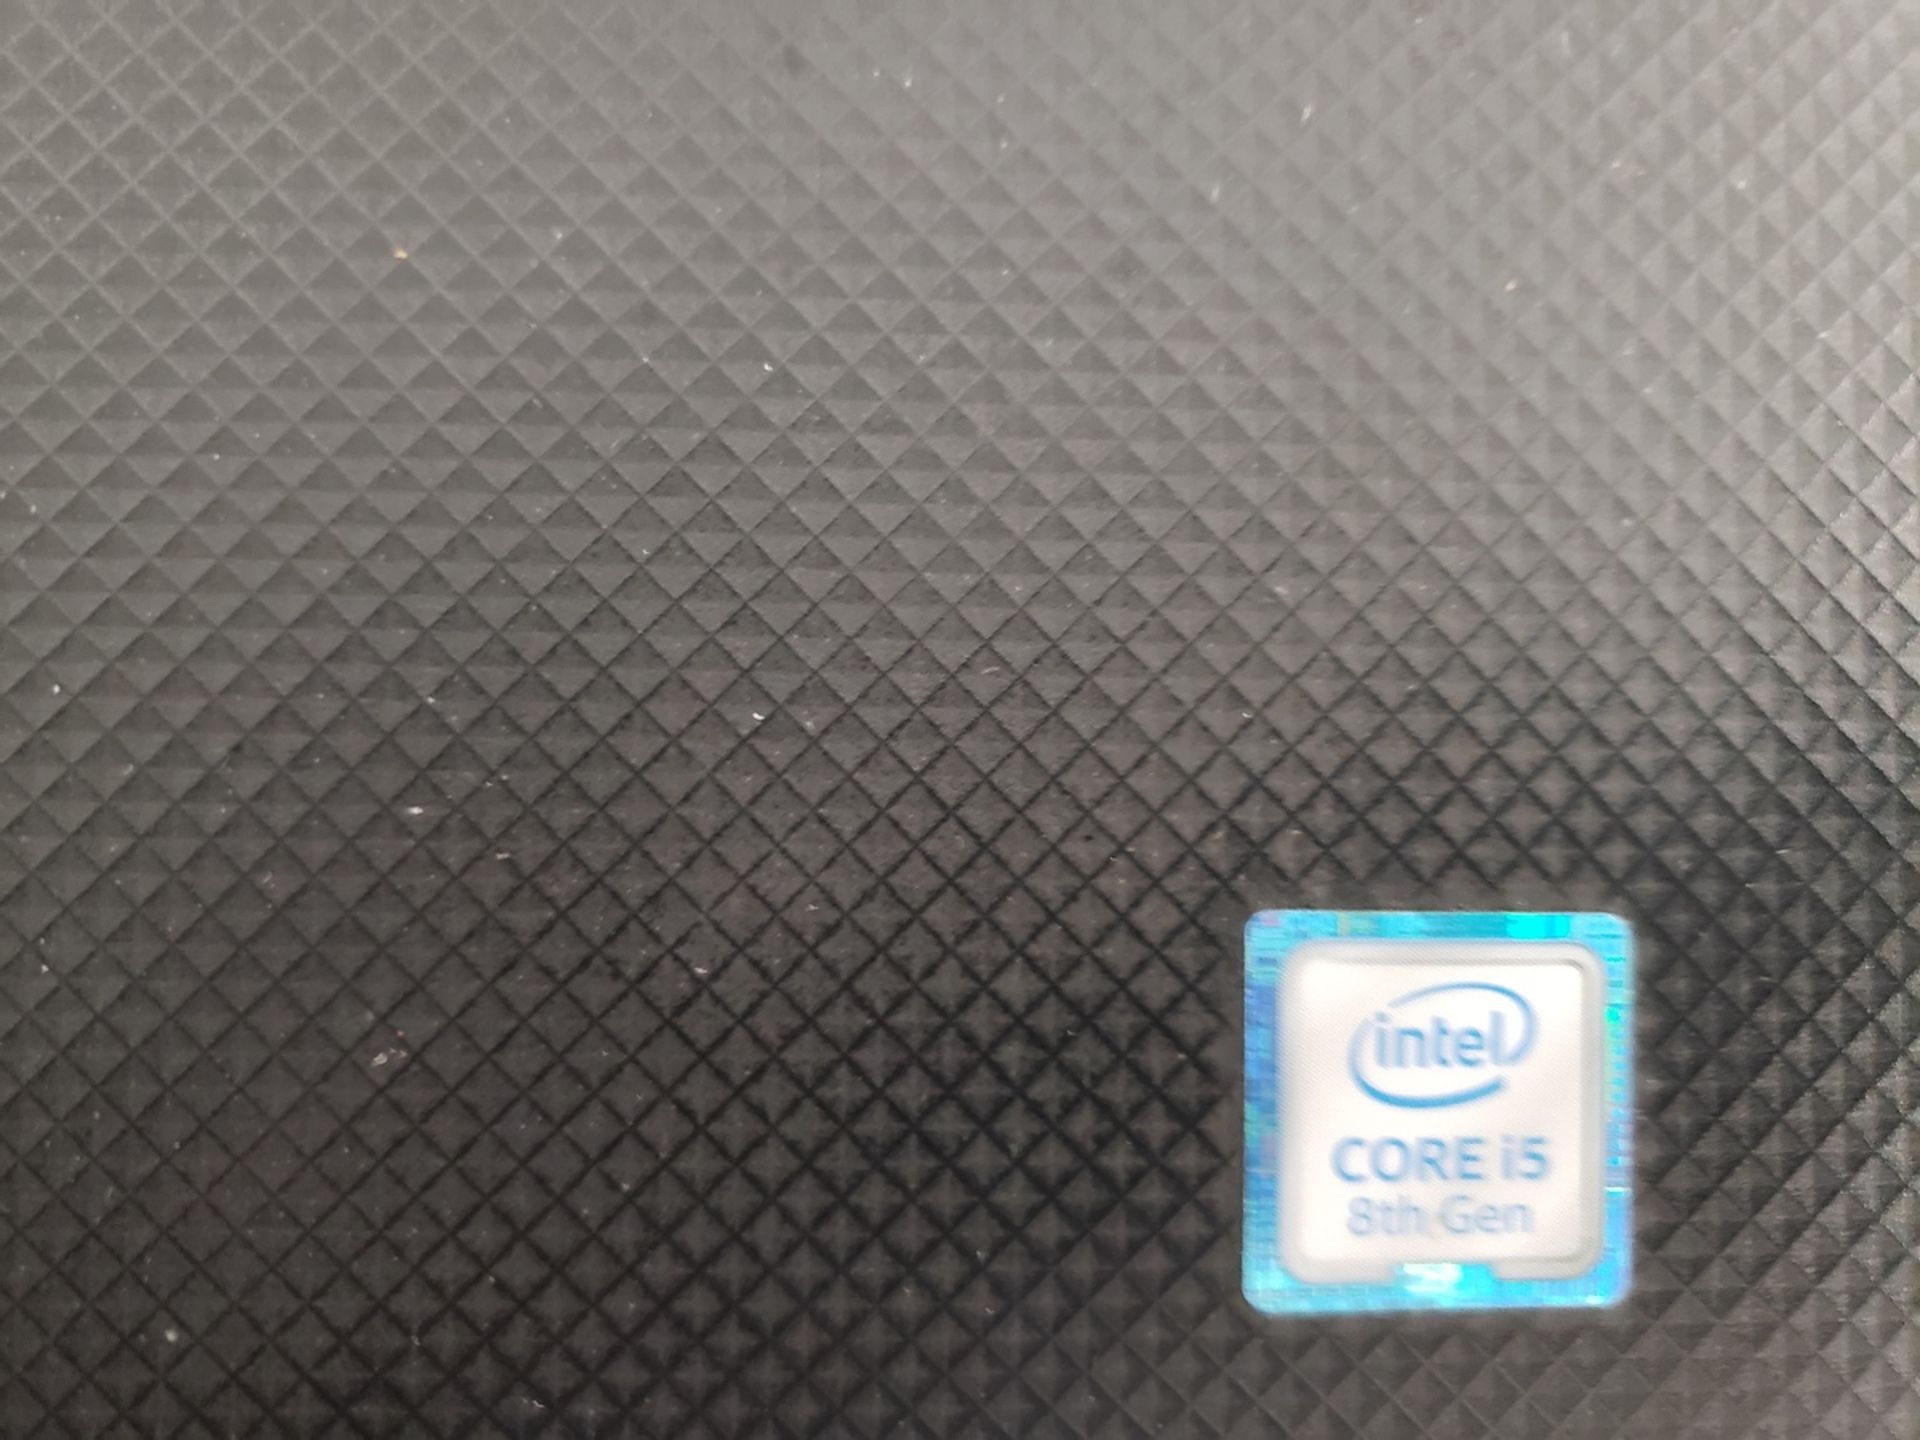 Dell Vostro Laptop Intel Core i5 8th Gen, M# P75F | Rig Fee: $10 - Image 3 of 3